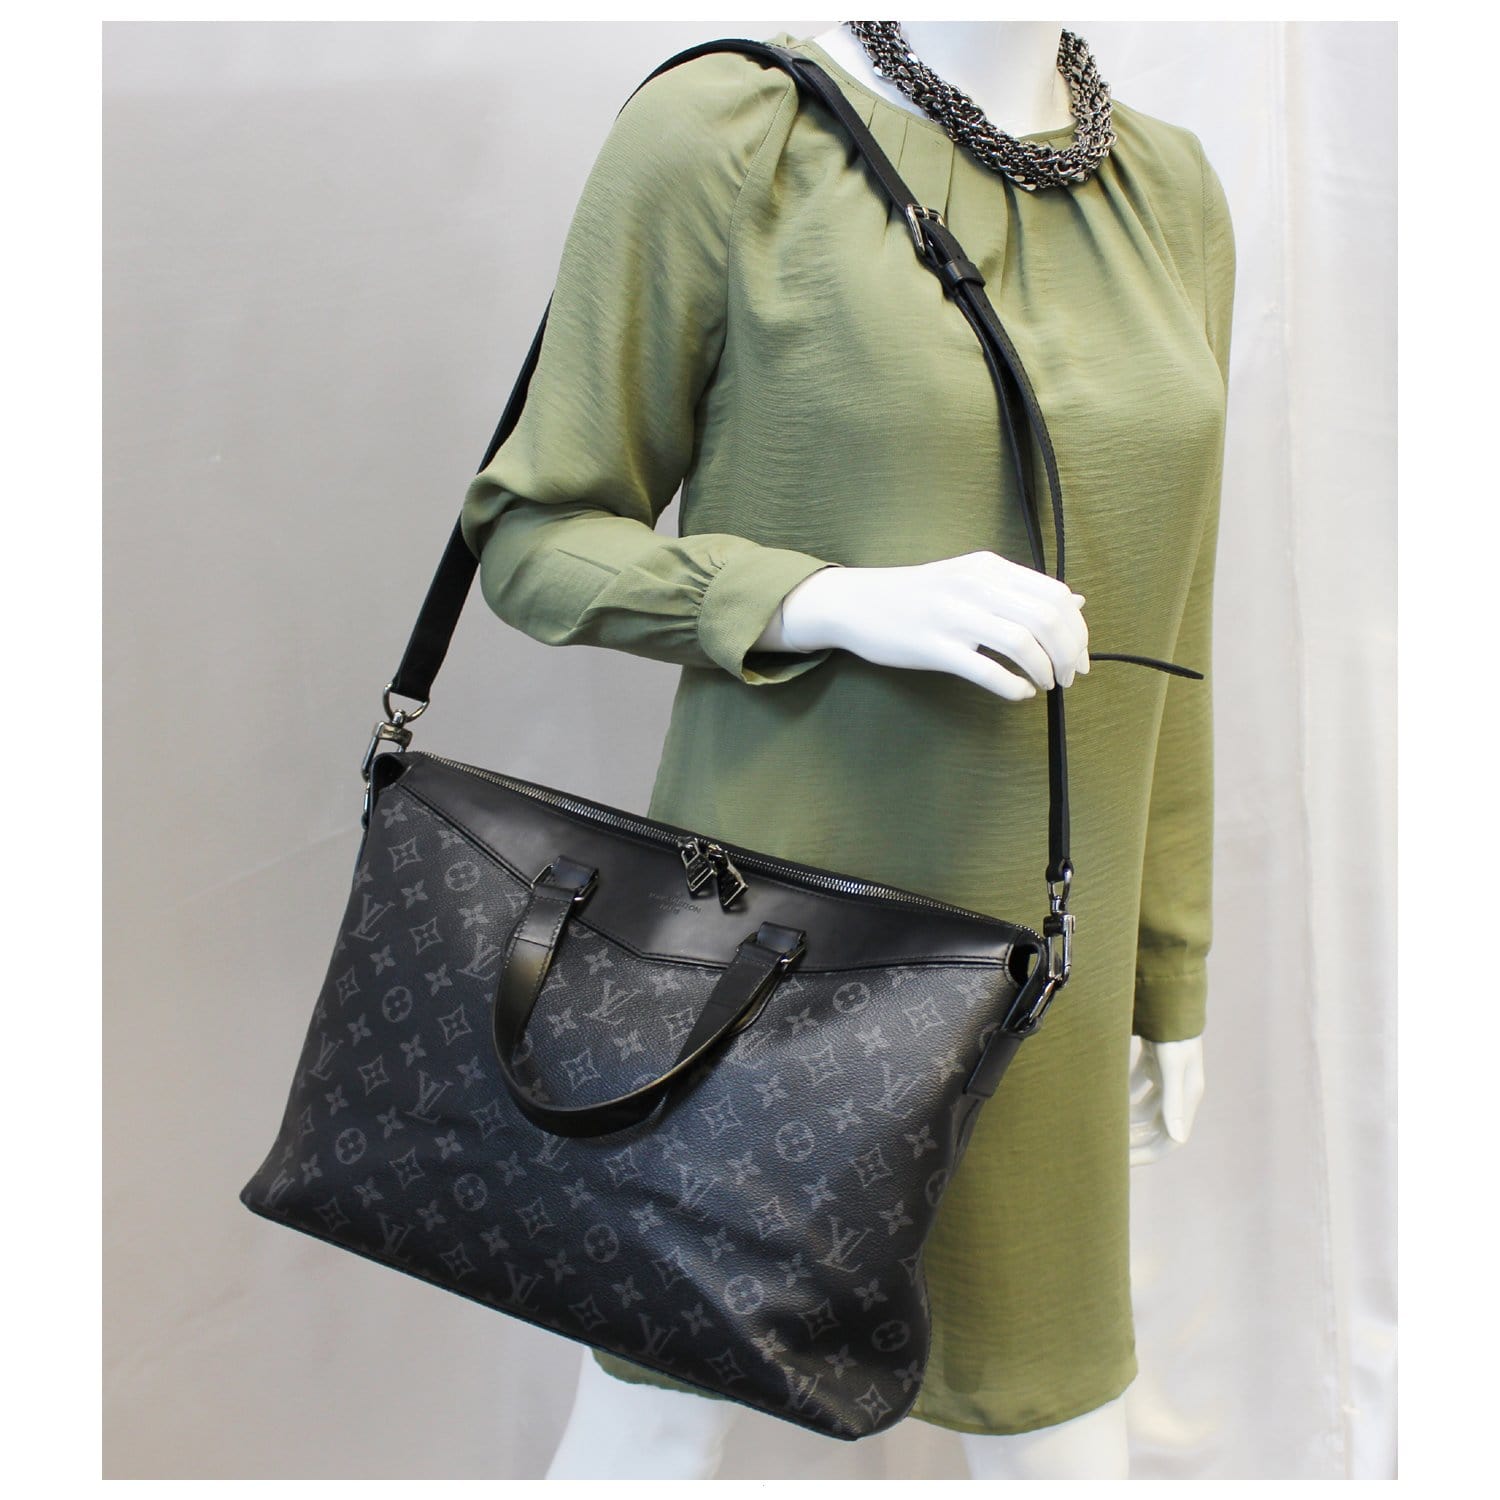 Black Louis Vuitton Monogram Eclipse Explorer Business Bag, AmaflightschoolShops Revival